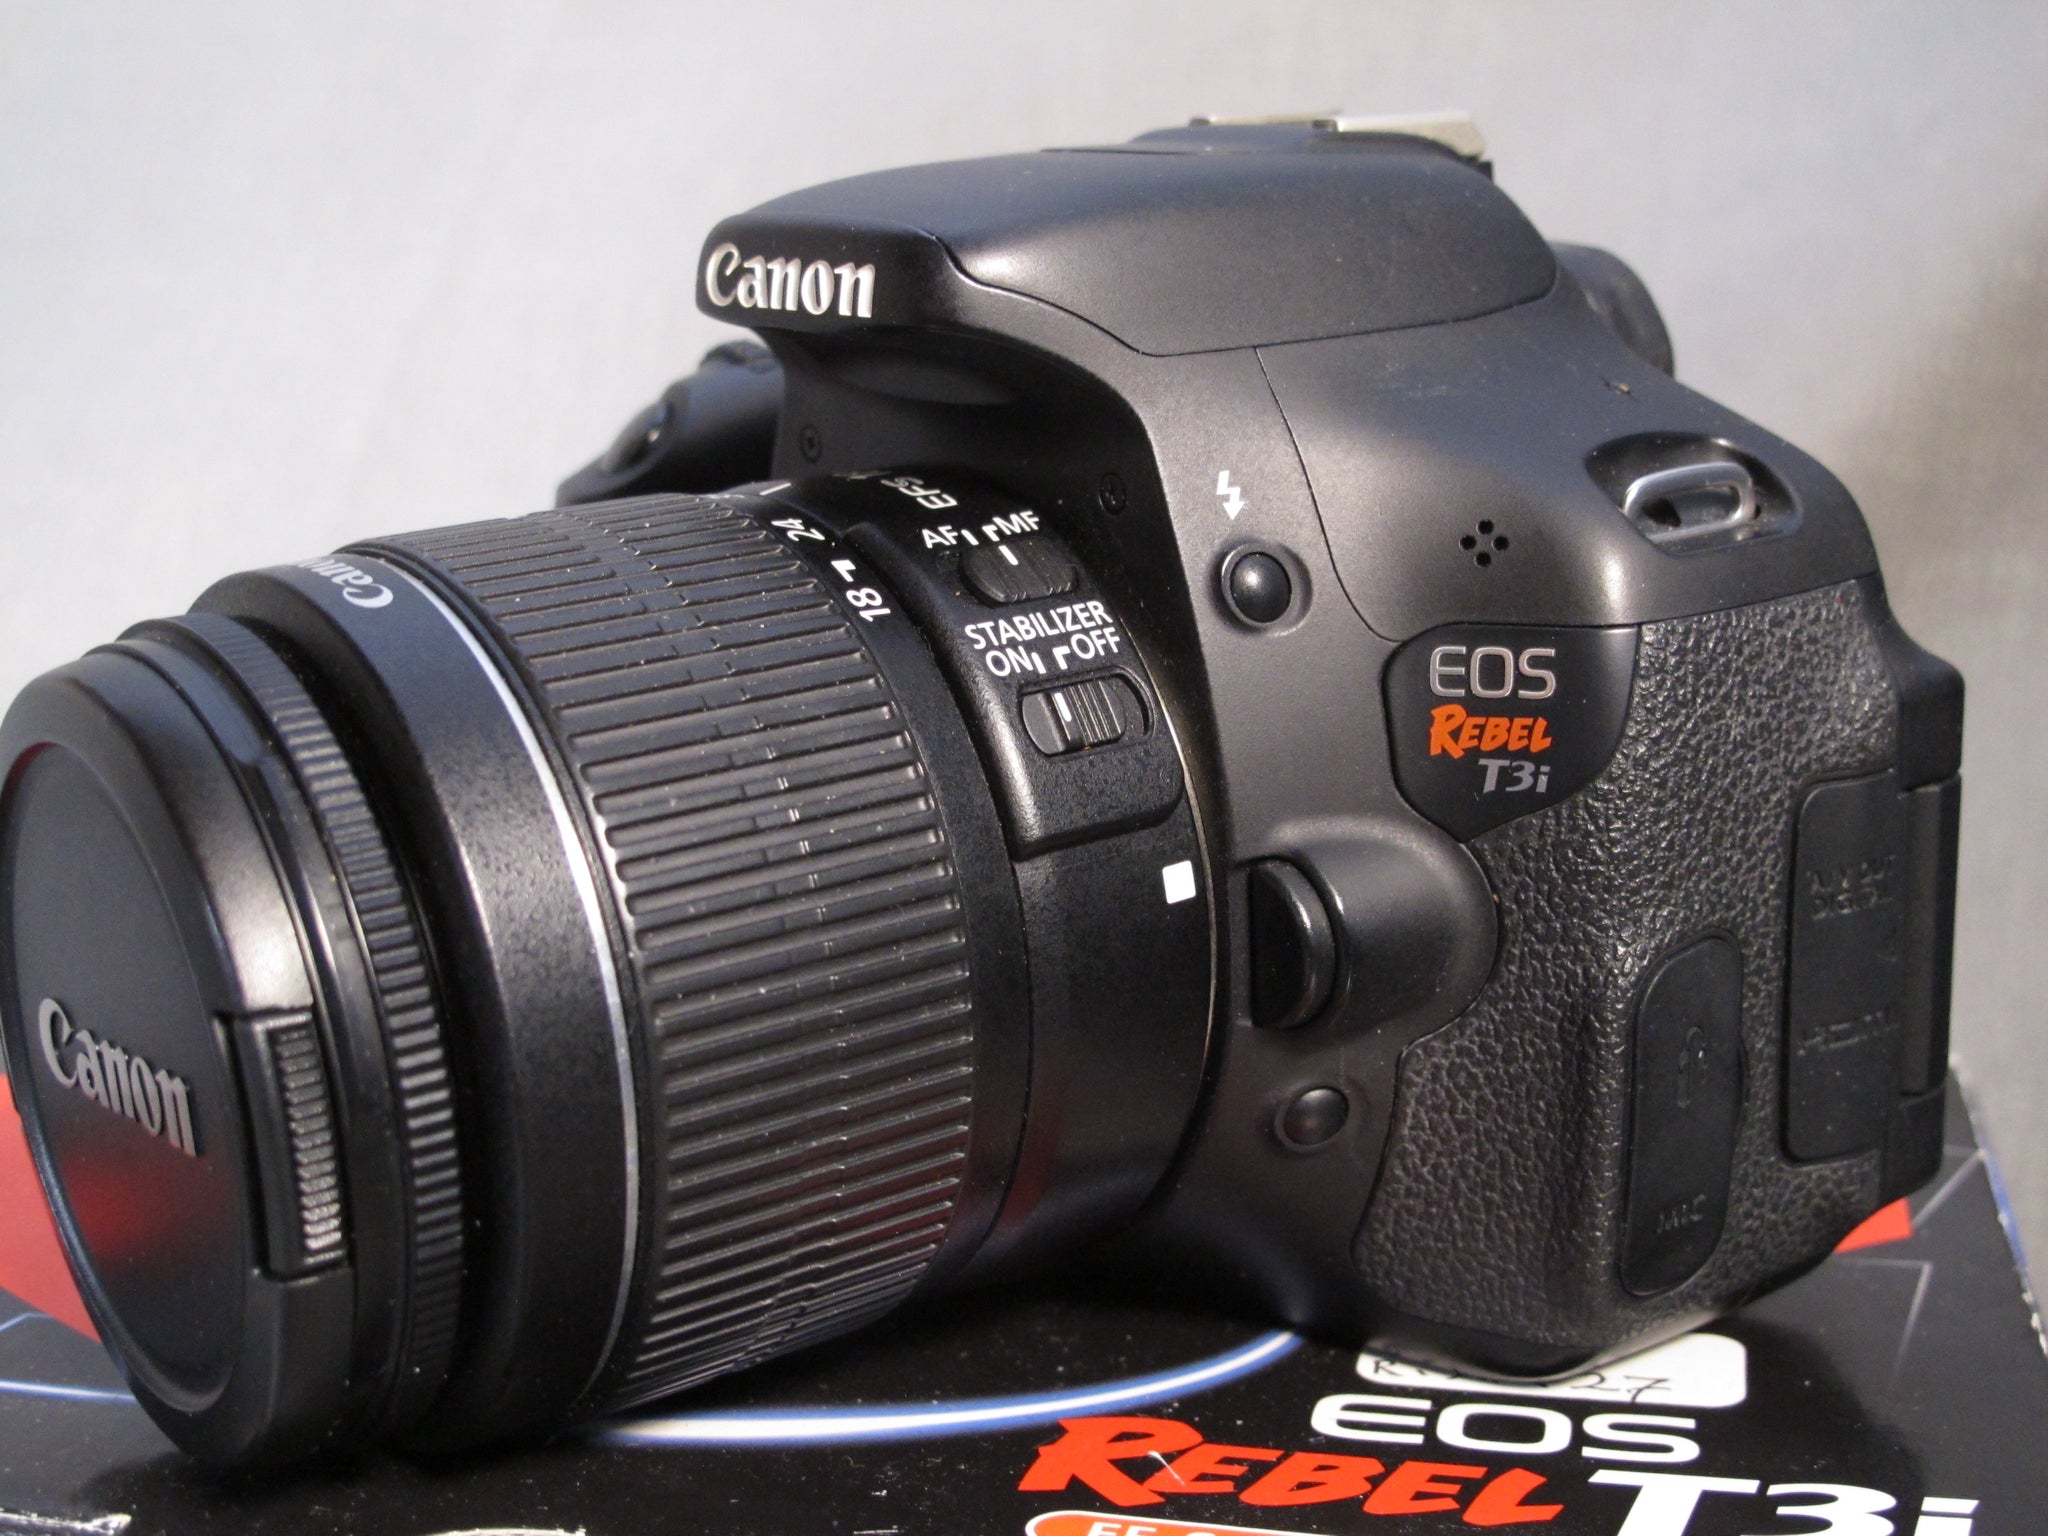 Canon EOS REBEL T3i with EF-S 18-55mm IS II f3.5-5.6 Canon EF Zoom